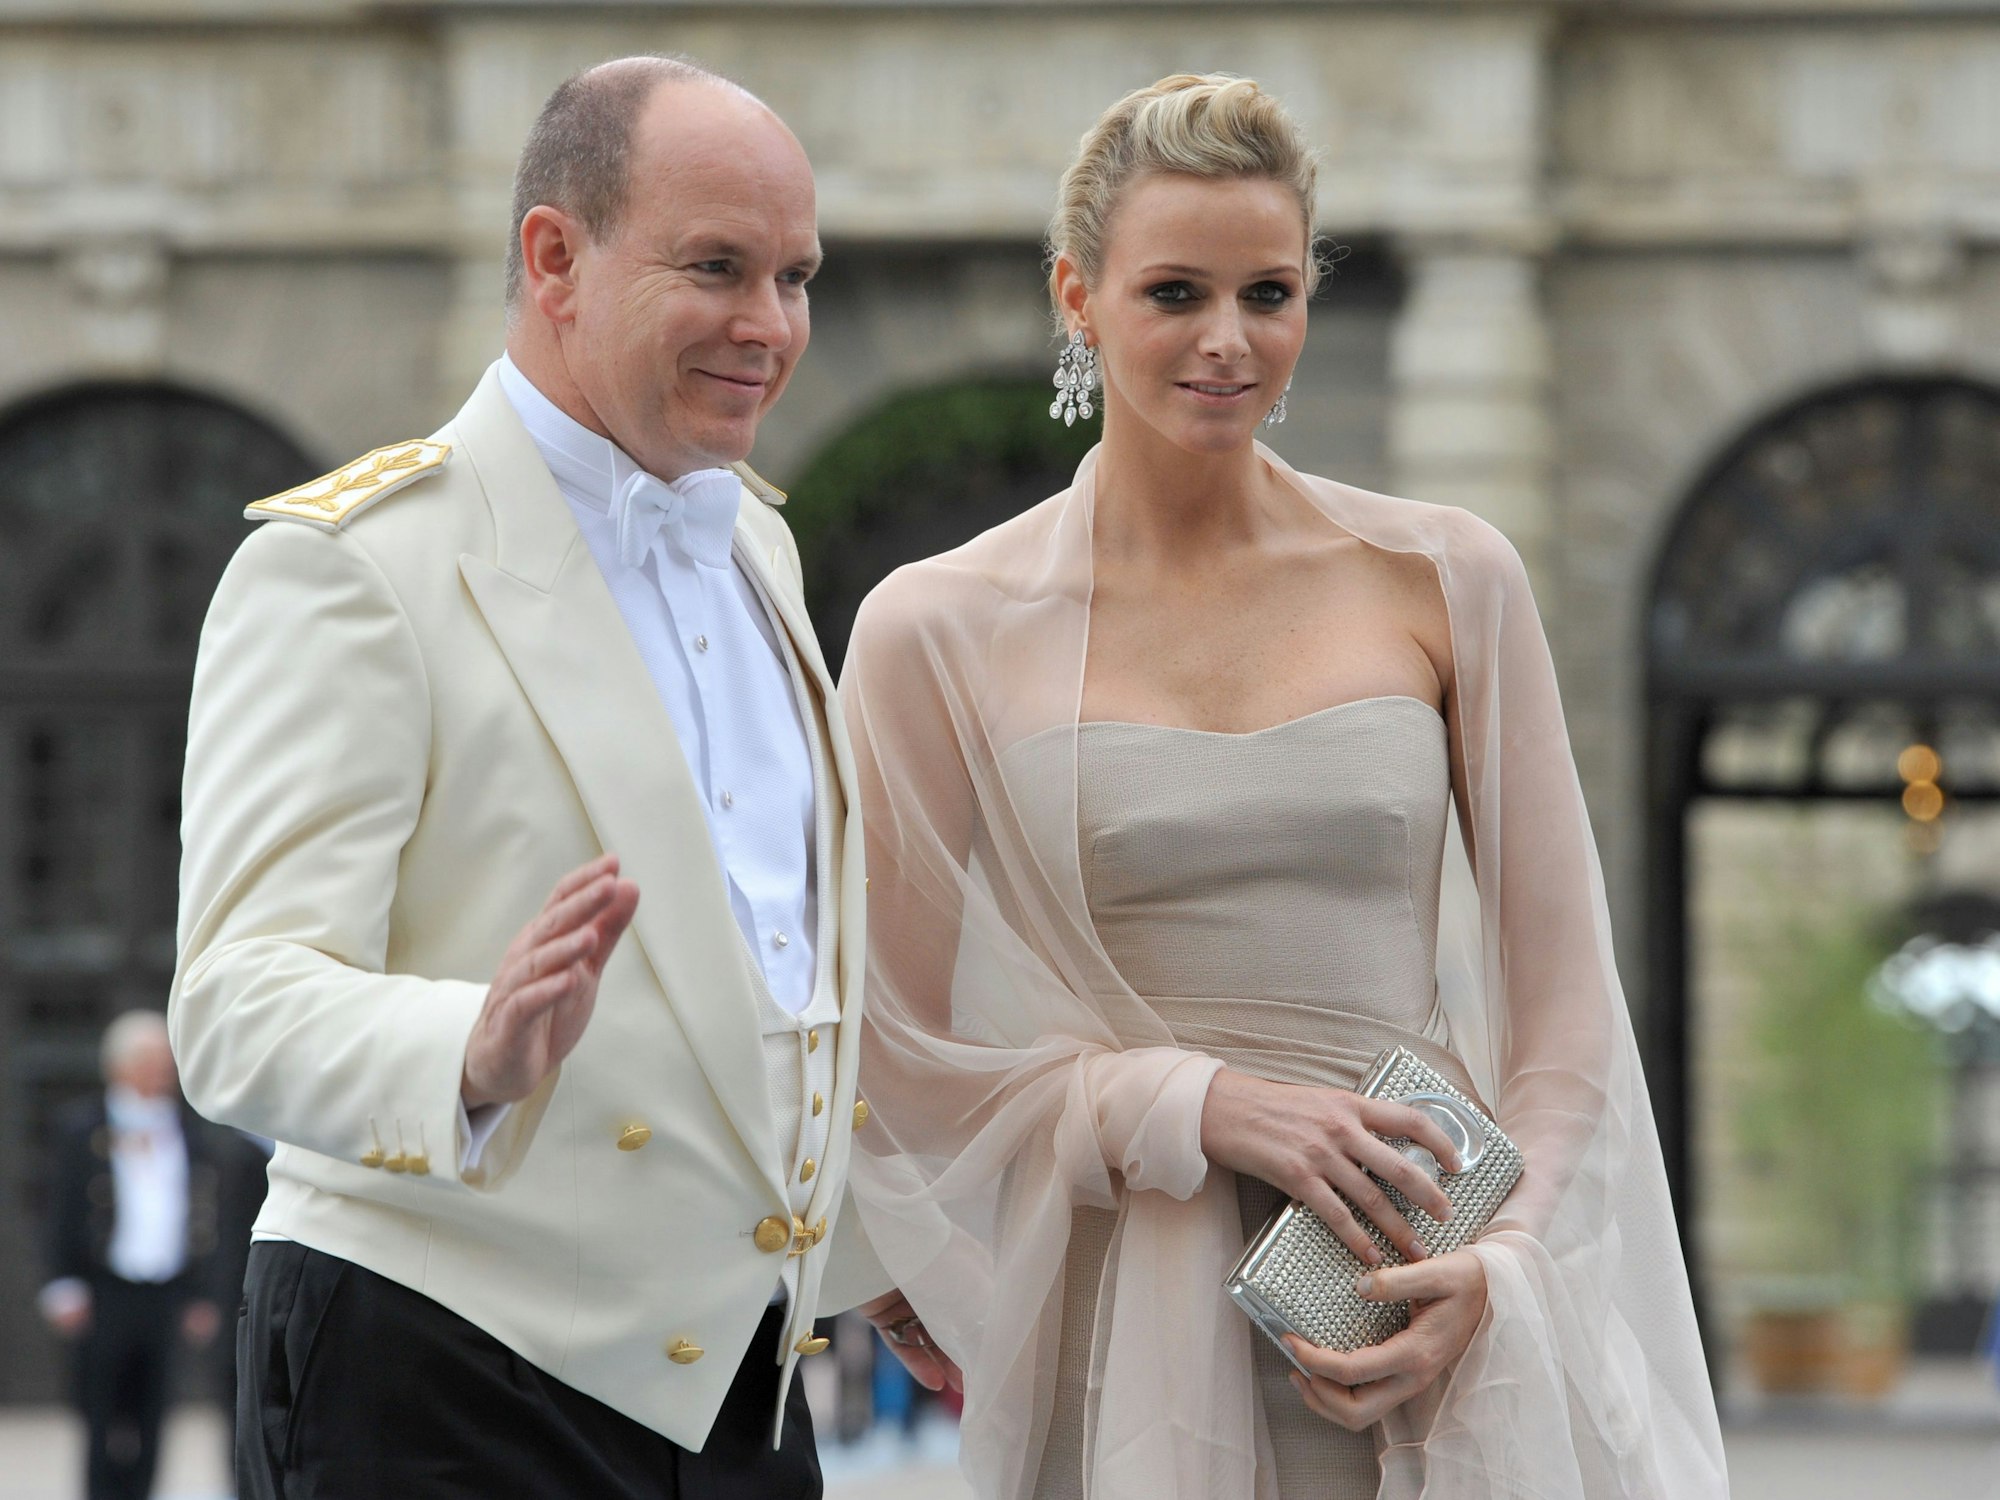 Fürst Albert II. von Monaco winkt neben Freundin Charlene Wittstock.